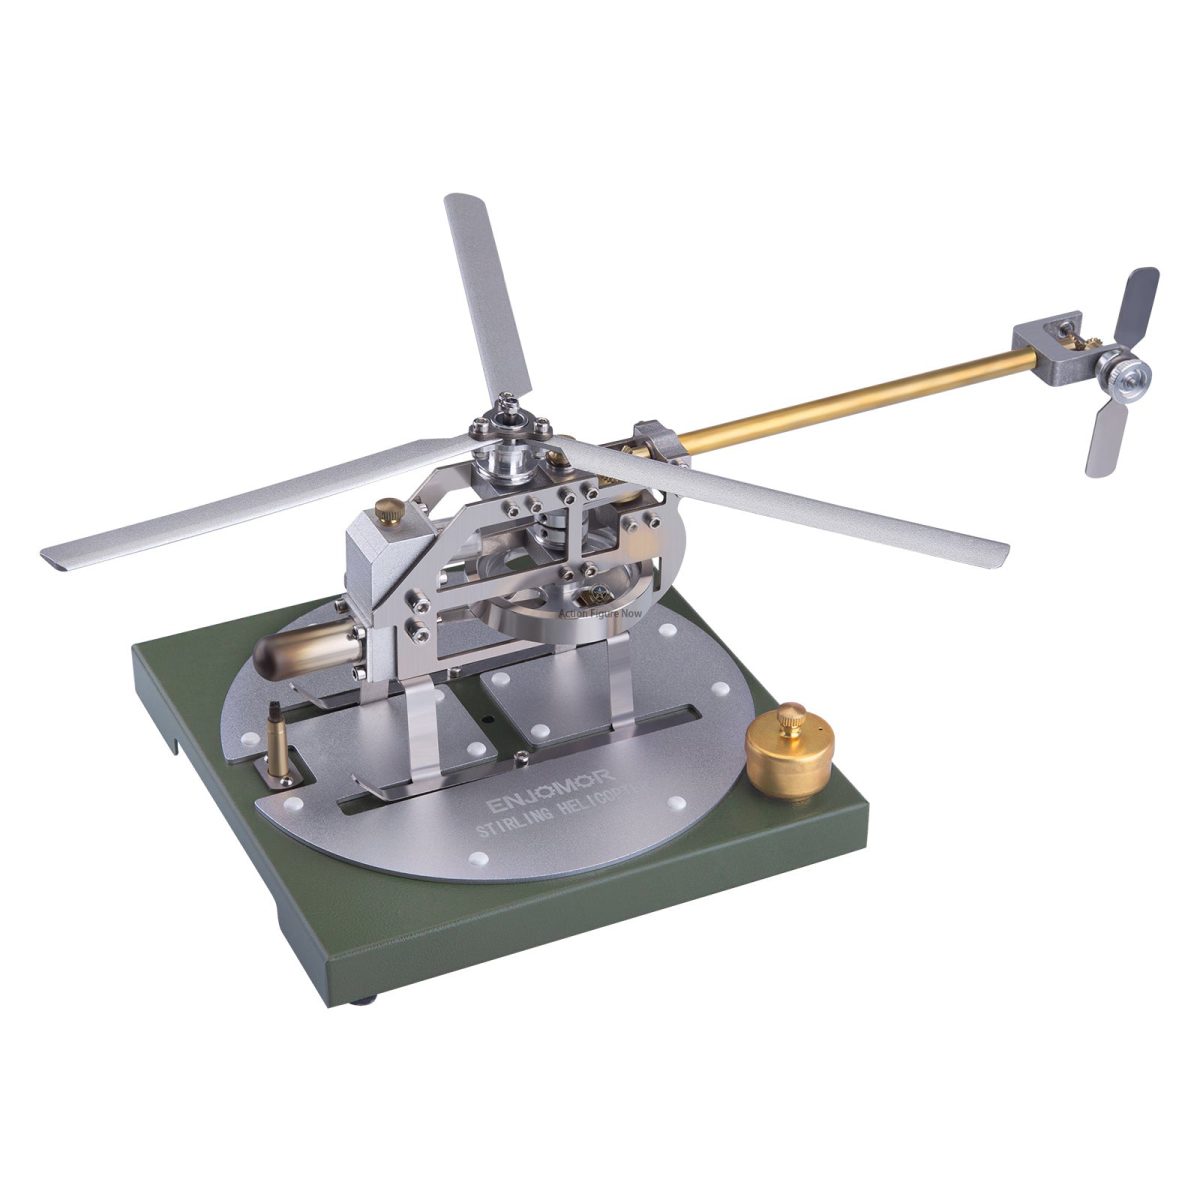 ENJOMOR Stirling Helicopter Model Kit | Gamma Hot Air Stirling Engine Model | DIY Assembly Model | STEM Educational Toy